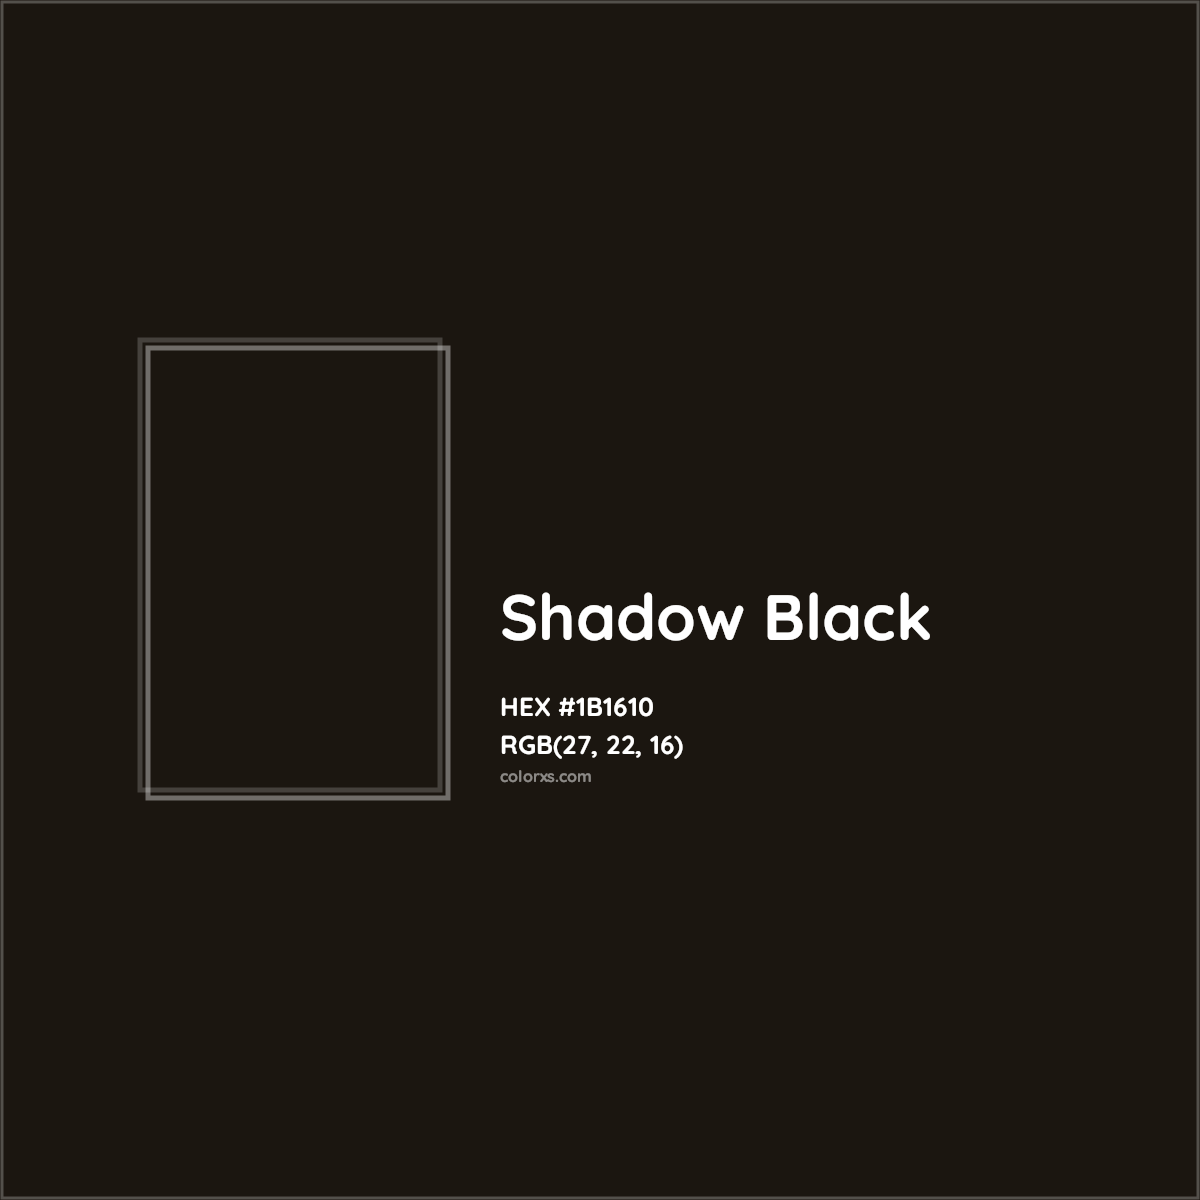 HEX #1B1610 Shadow Black Color - Color Code